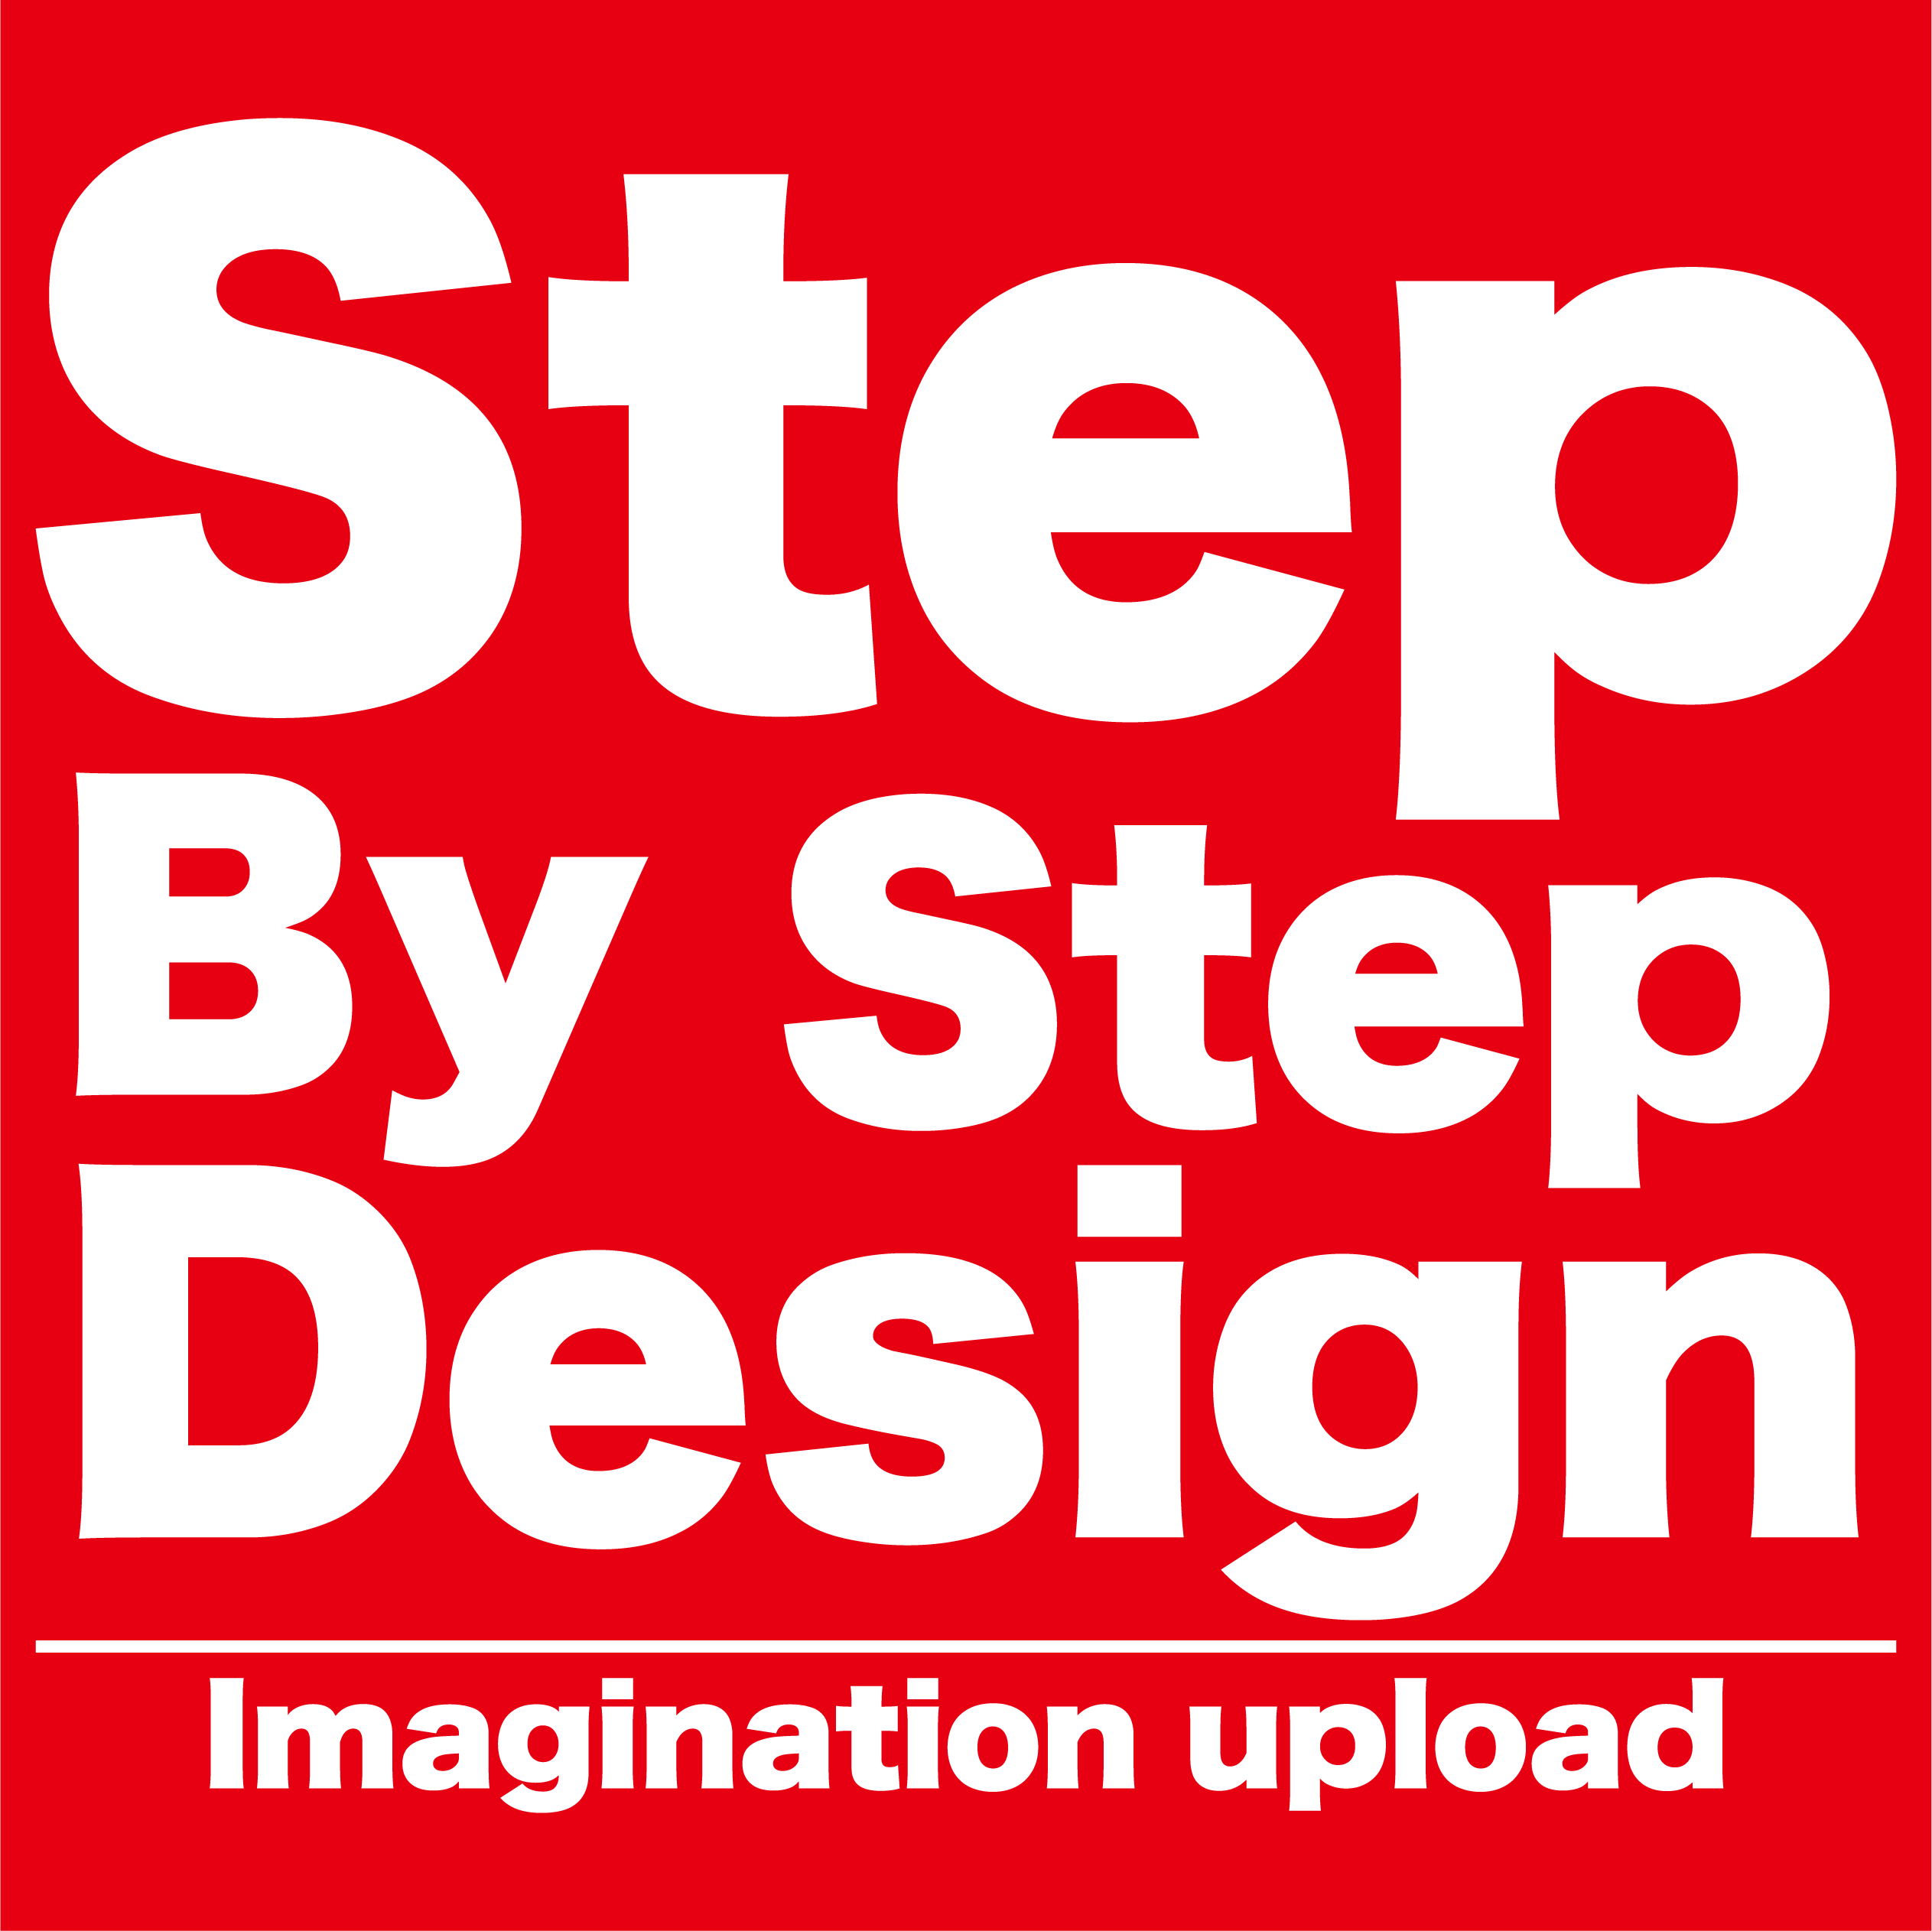 step by step design／ステップ バイ ステップ デザインは、沖縄県のうるま市にある総合デザインショップ★総合広告デザイン【名刺・パンフレット・チラシ・動画・ホームページ制作・のぼり旗などの制作とブランディング】自社広告物や動画・ホームページなど色々なデザインをしております。まずはショップページをぜひご覧ください。 あなた・自社の頭の中で考えている欲しいオリジナルデザインを提案します！ 沖縄県｜うるま市｜総合デザイン｜のぼり｜名刺｜チラシ｜ホームページ制作｜ブランディング｜